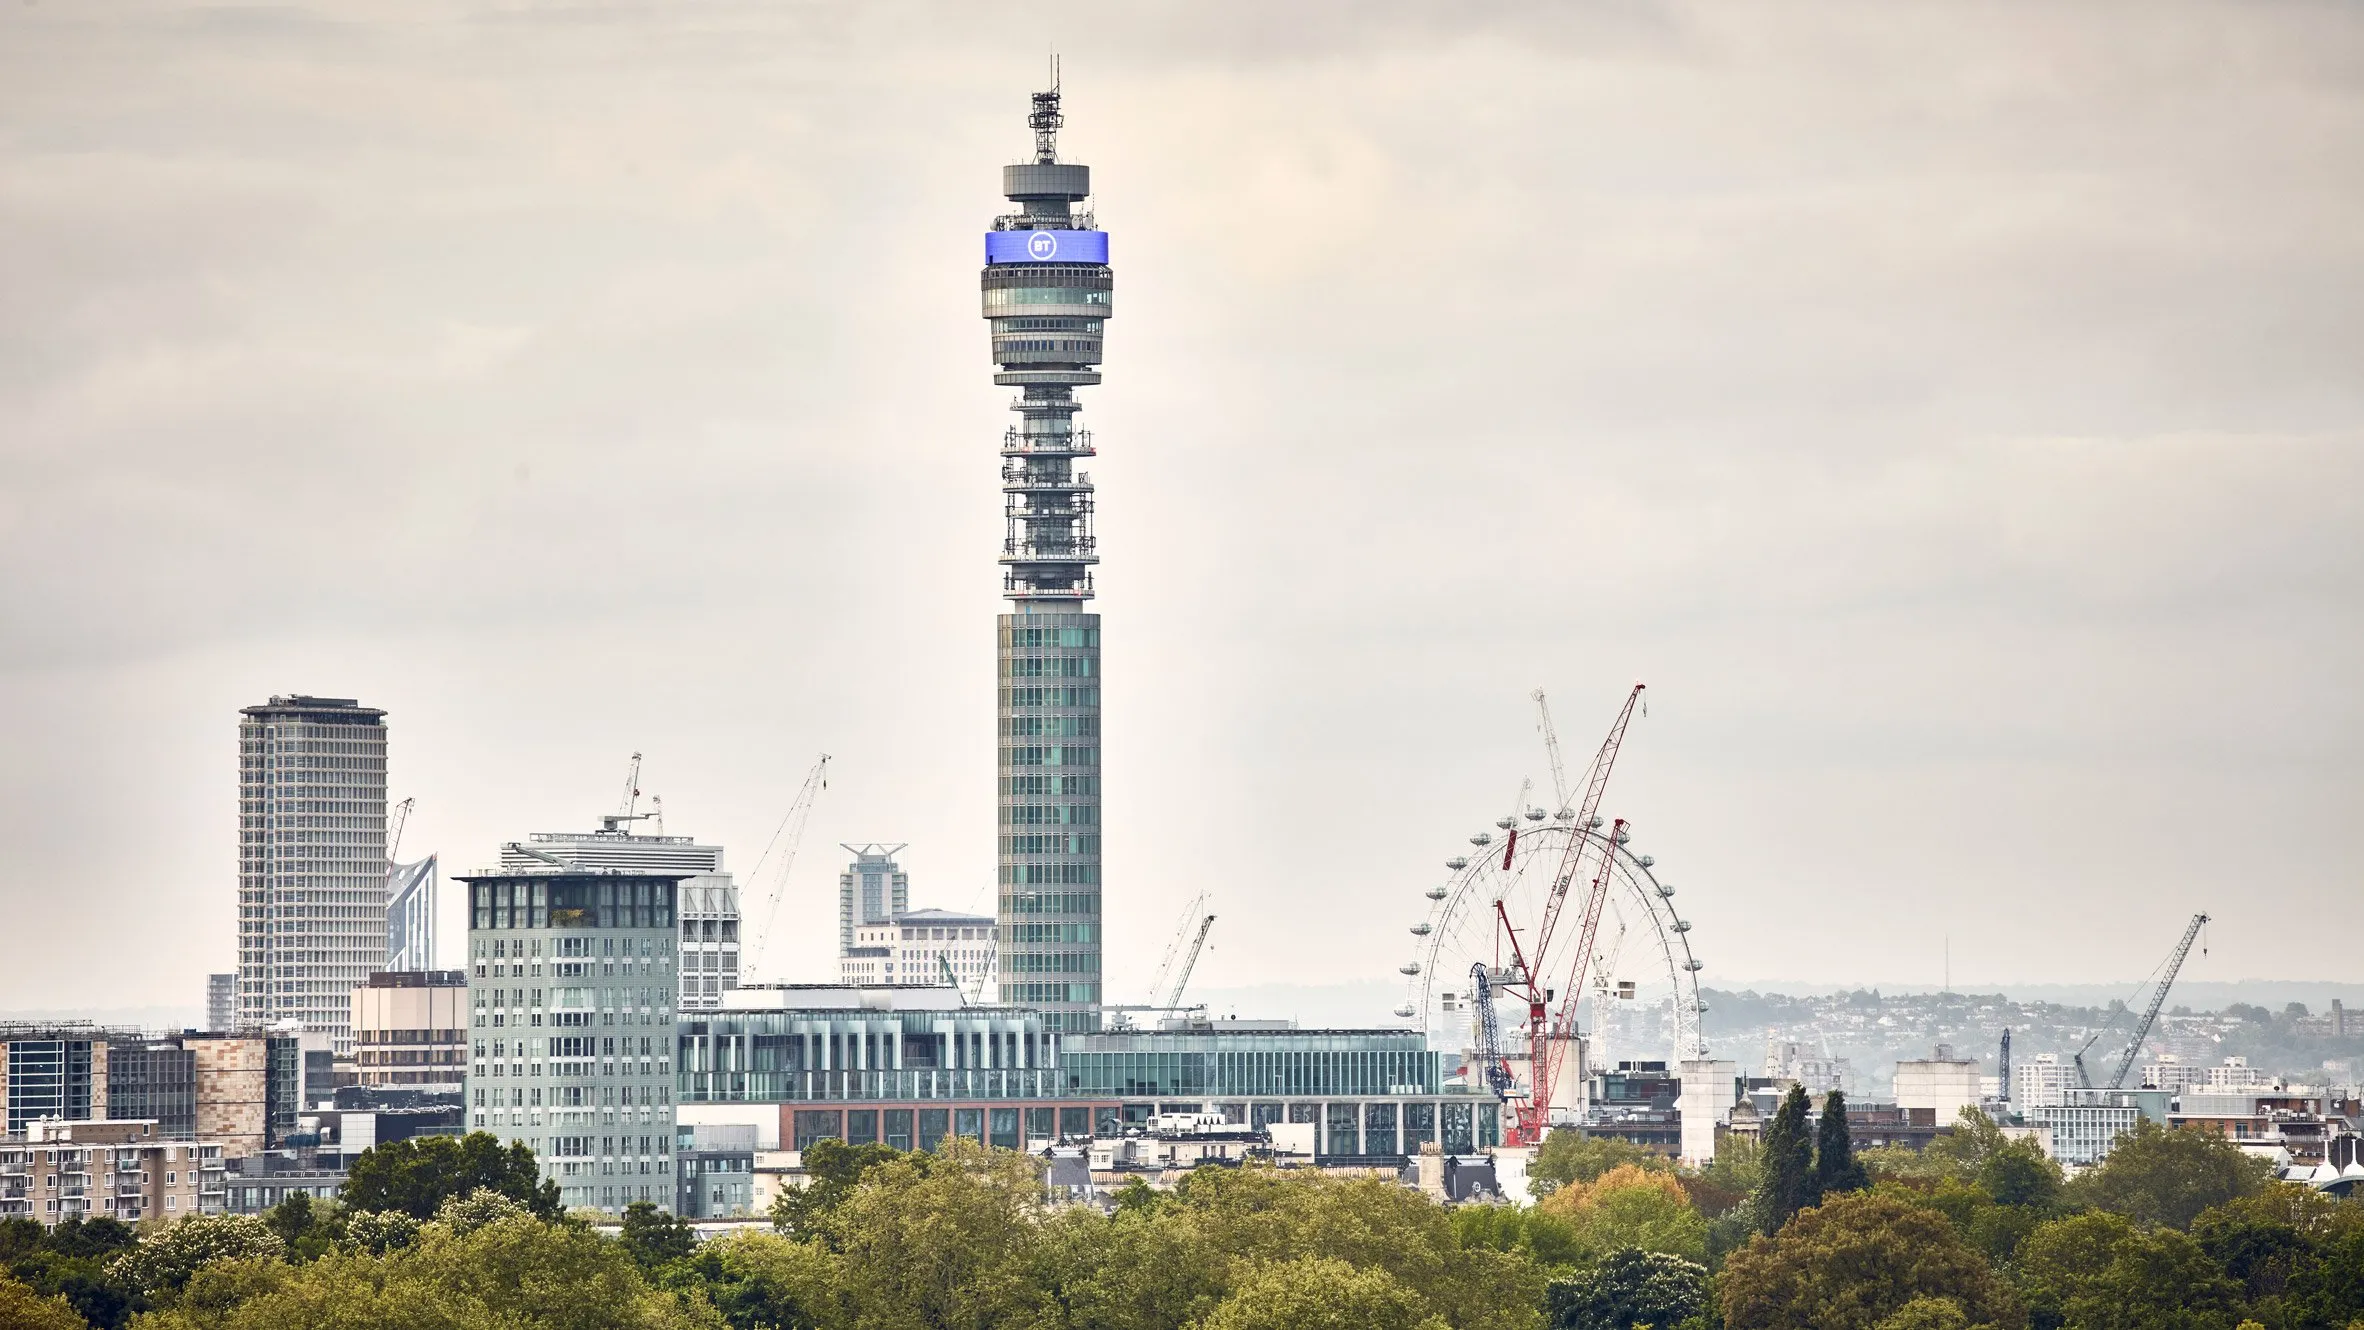 Londra'nın ünlü BT Kulesi otel olacak